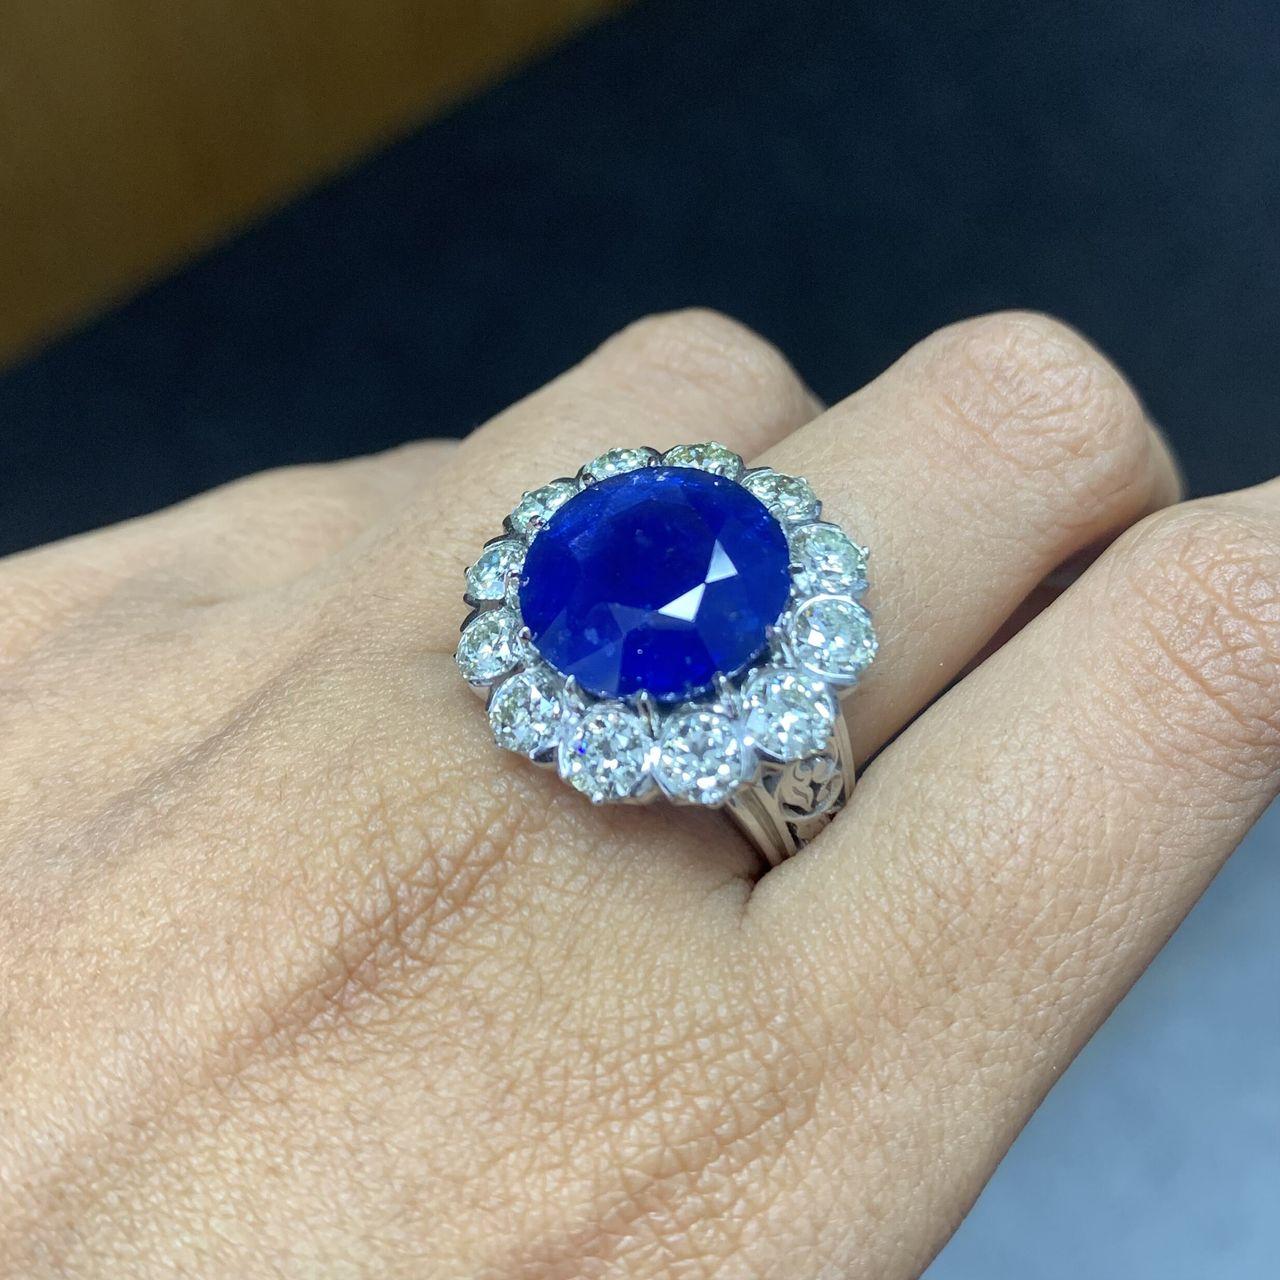 Admirez l'extraordinaire bague en saphir de Ceylan de 10,60 carats, ornée du charme intemporel des diamants taille ancienne, le tout serti dans l'opulence du platine 900. La pièce maîtresse de cette bague exquise est un saphir de Ceylan bleu bleu